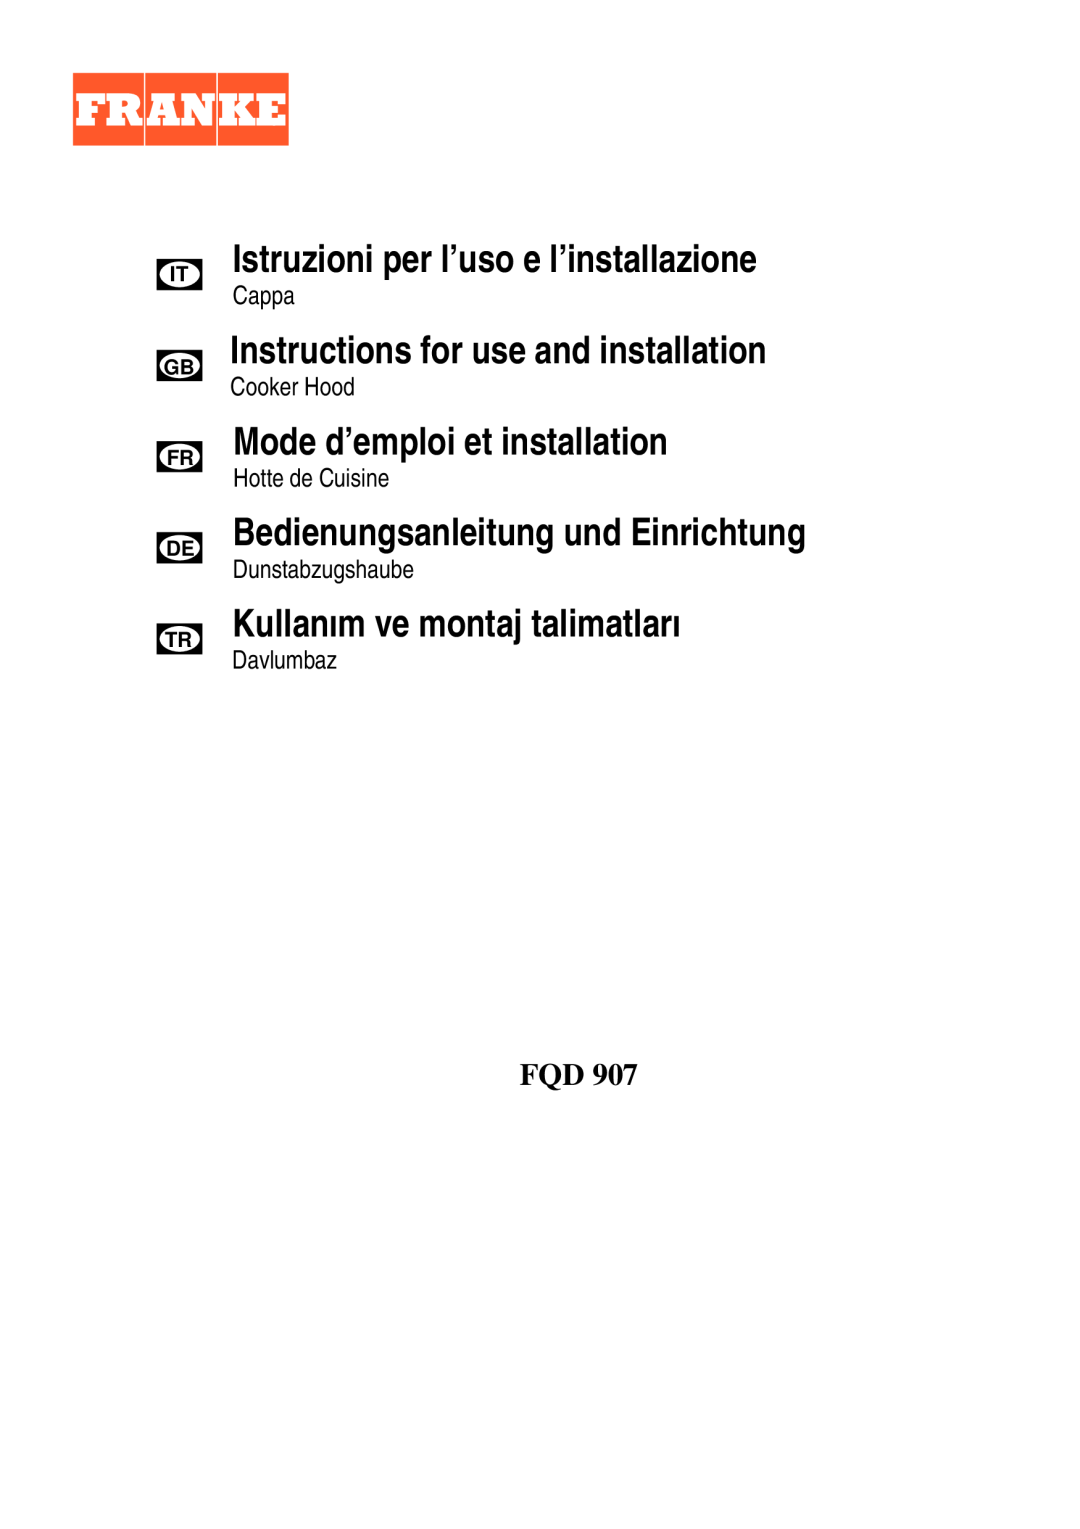 Franke Consumer Products FQD 907 manual Istruzioni per l’uso e l’installazione, Instructions for use and installation 